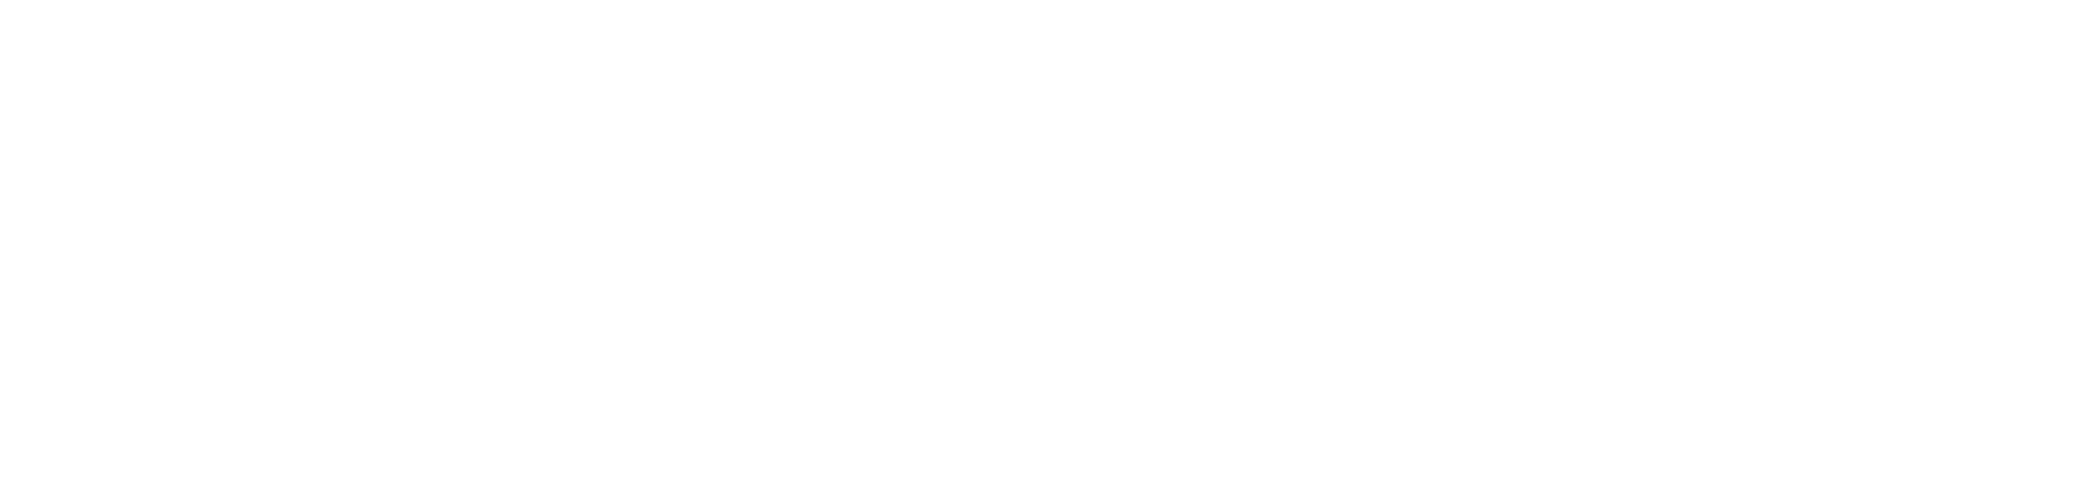 International Aviation Technical College at Riyadh